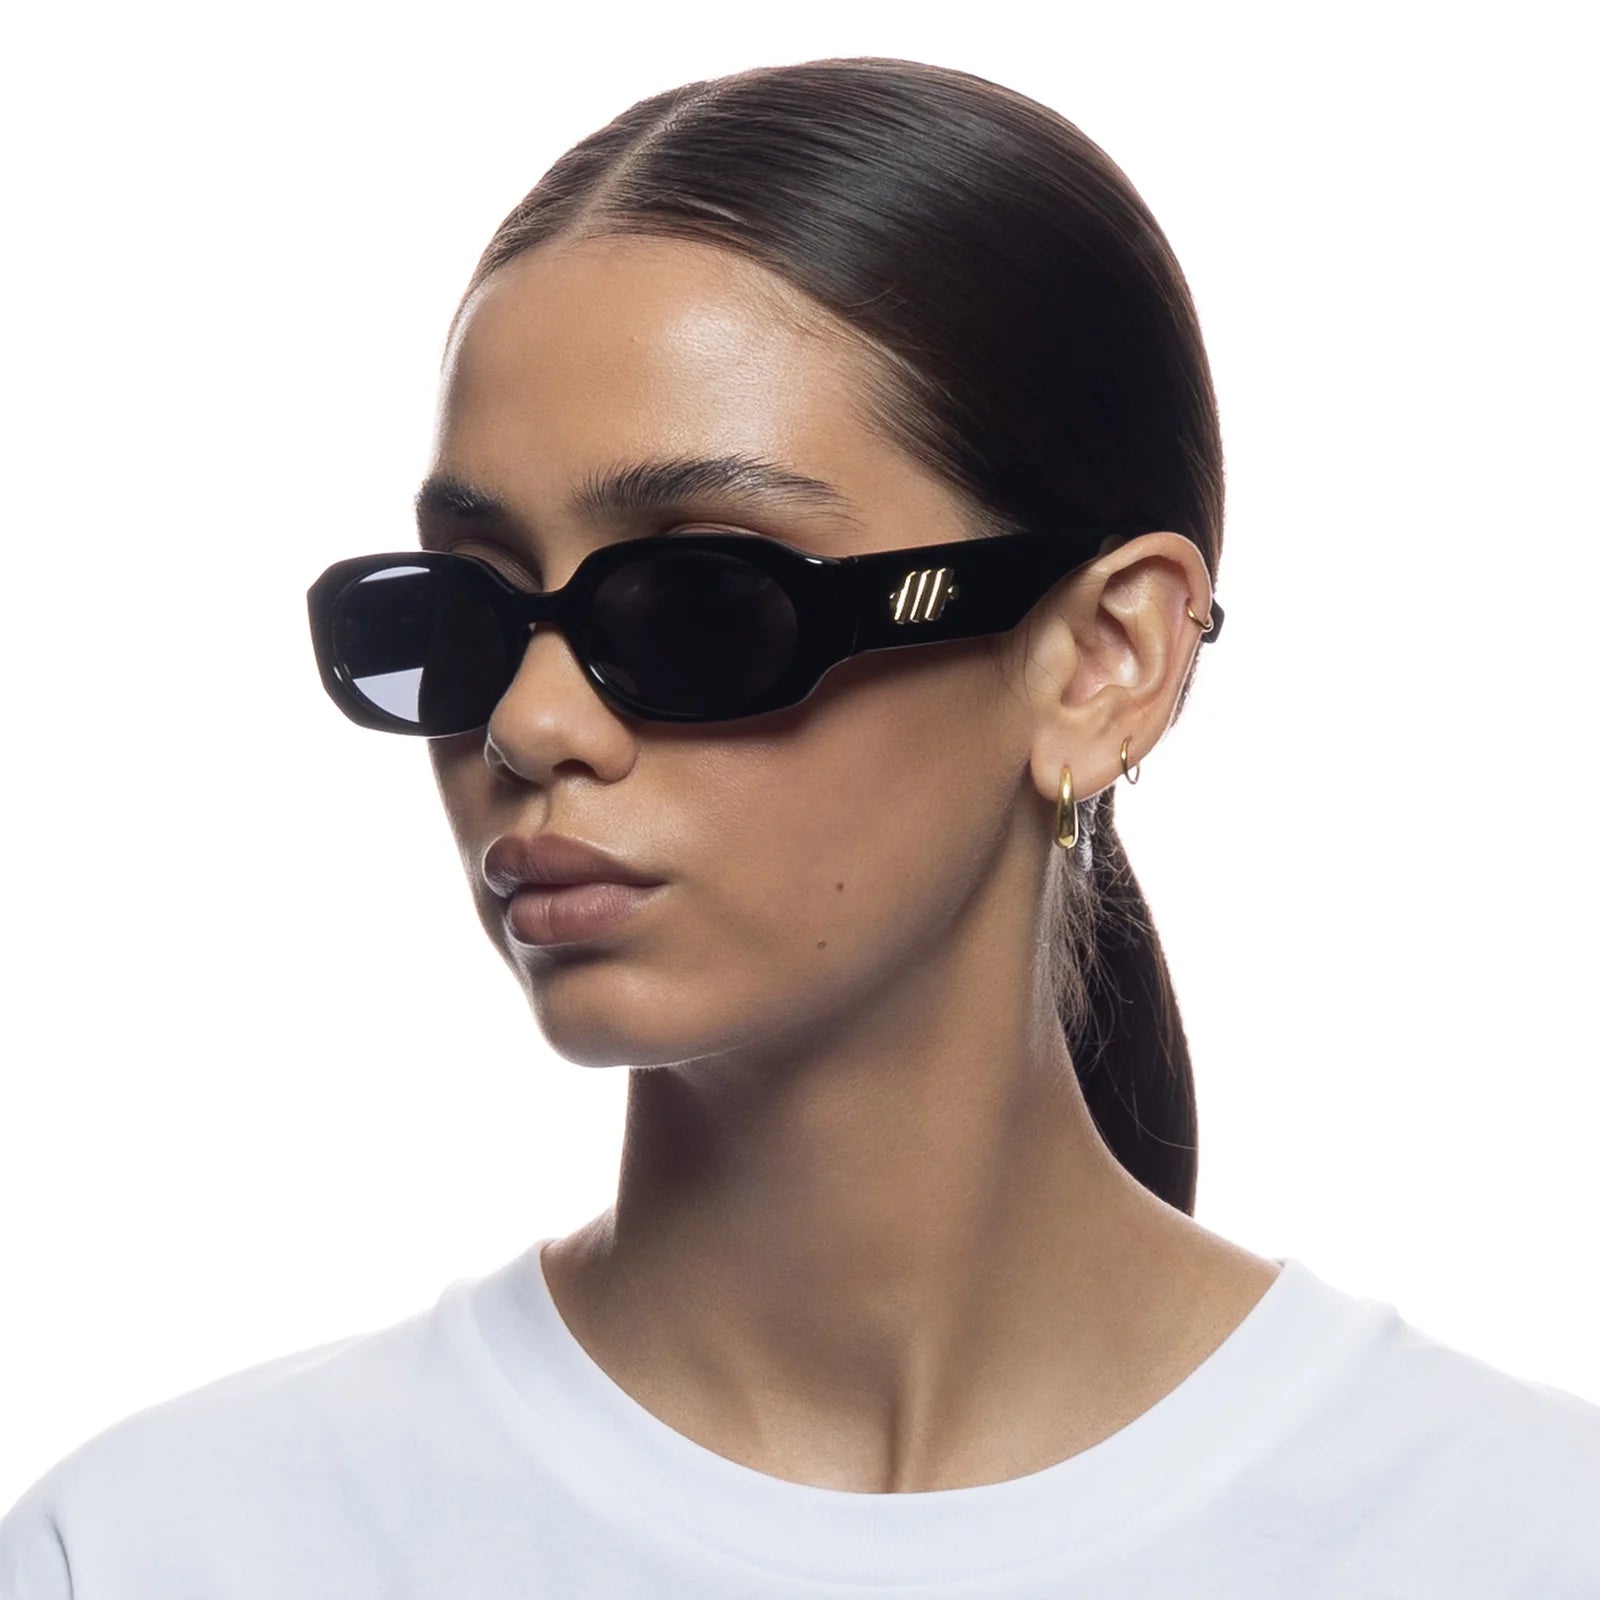 Le Specs Sunglasses Shebang - Black